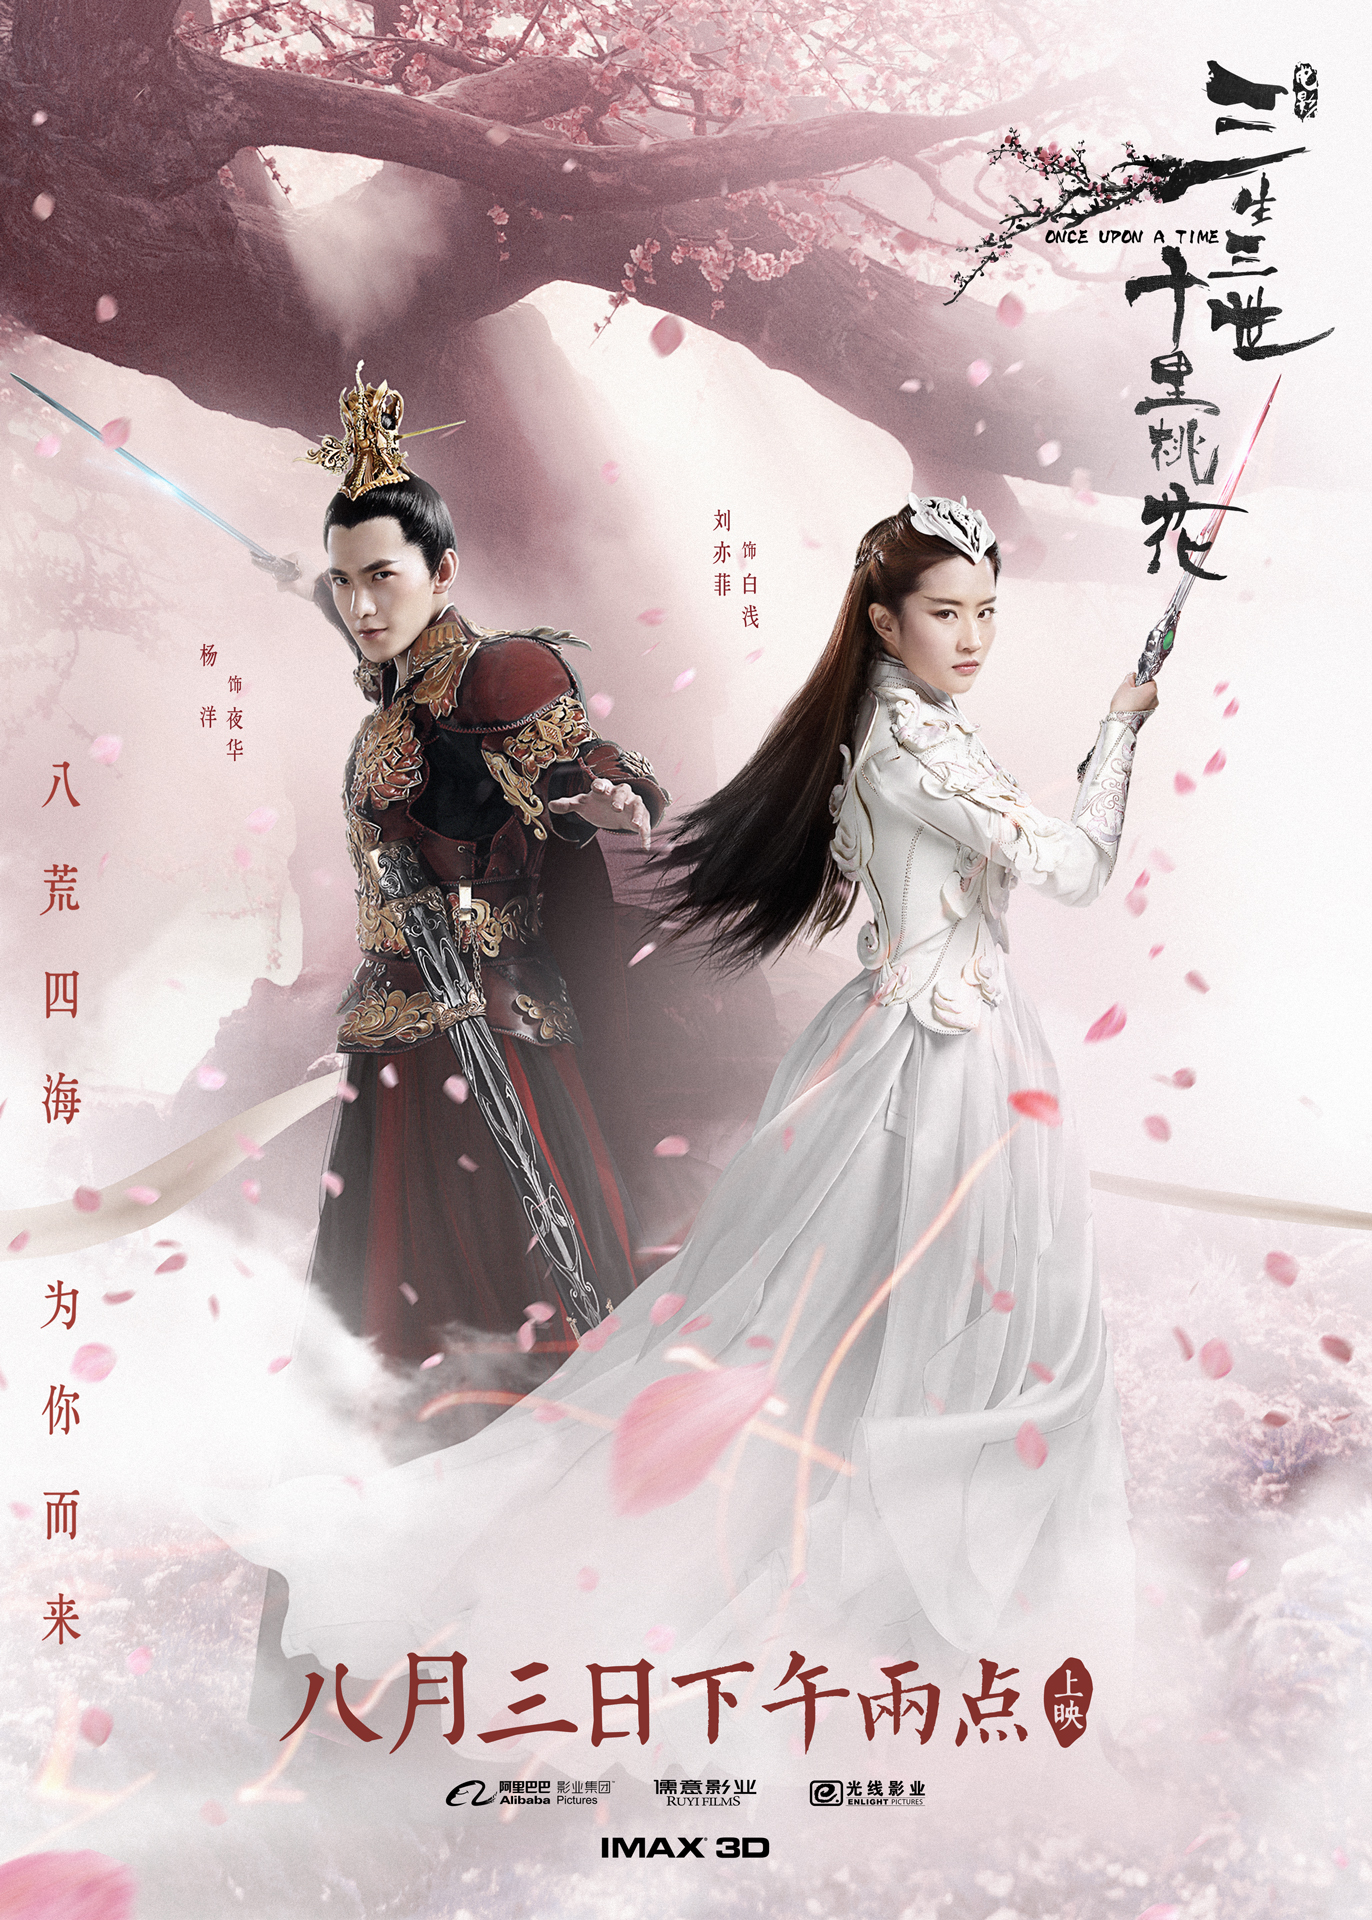 电影《三生三世十里桃花》发布终极预告和海报 刘亦菲杨洋打斗场面